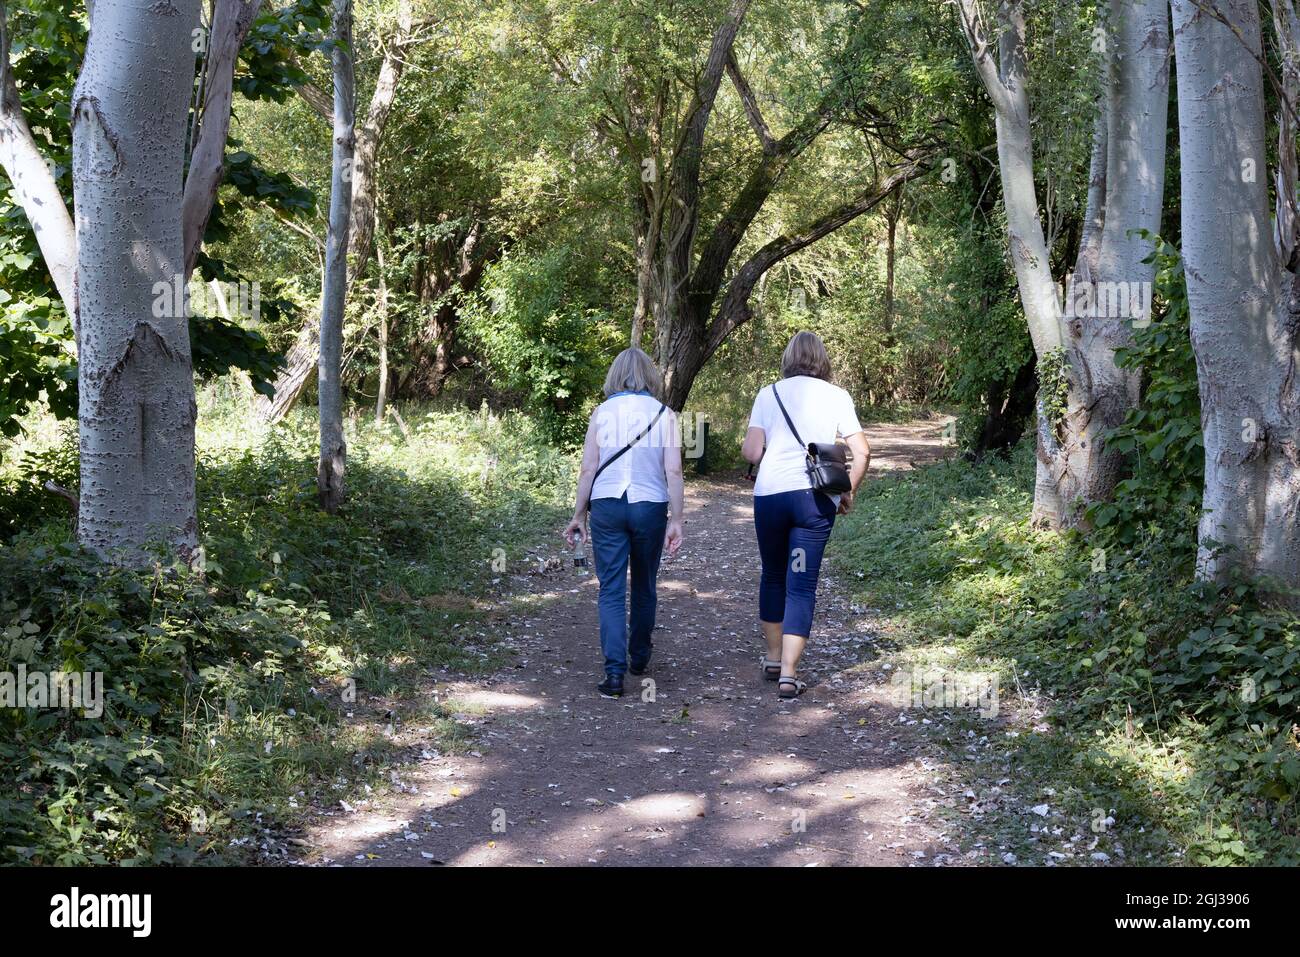 Outdoor-Bewegung und gesunder Lebensstil Großbritannien; zwei kaukasische Frauen mittleren Alters, die auf dem englischen Land spazieren, von hinten gesehen, Suffolk Großbritannien Stockfoto